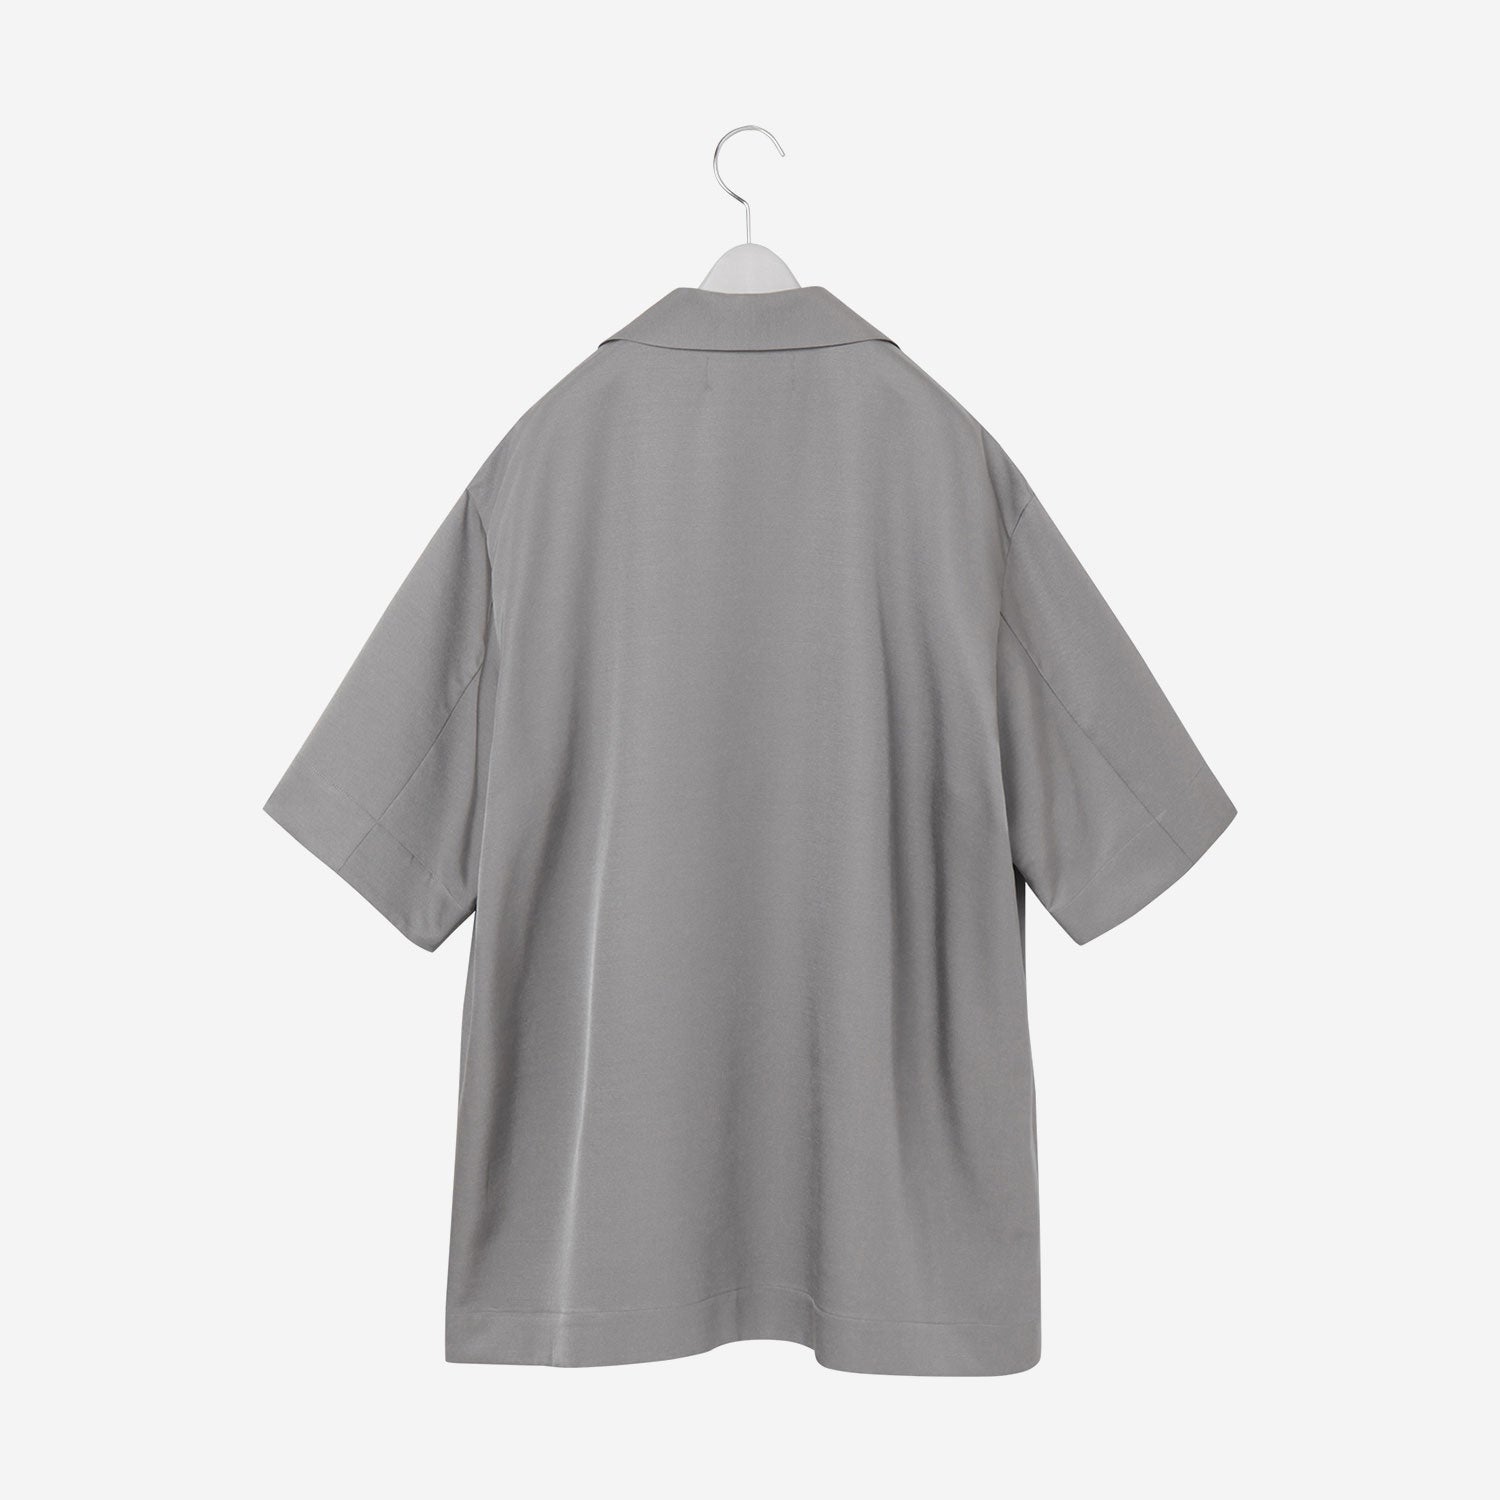 Open collar Shirt / gray